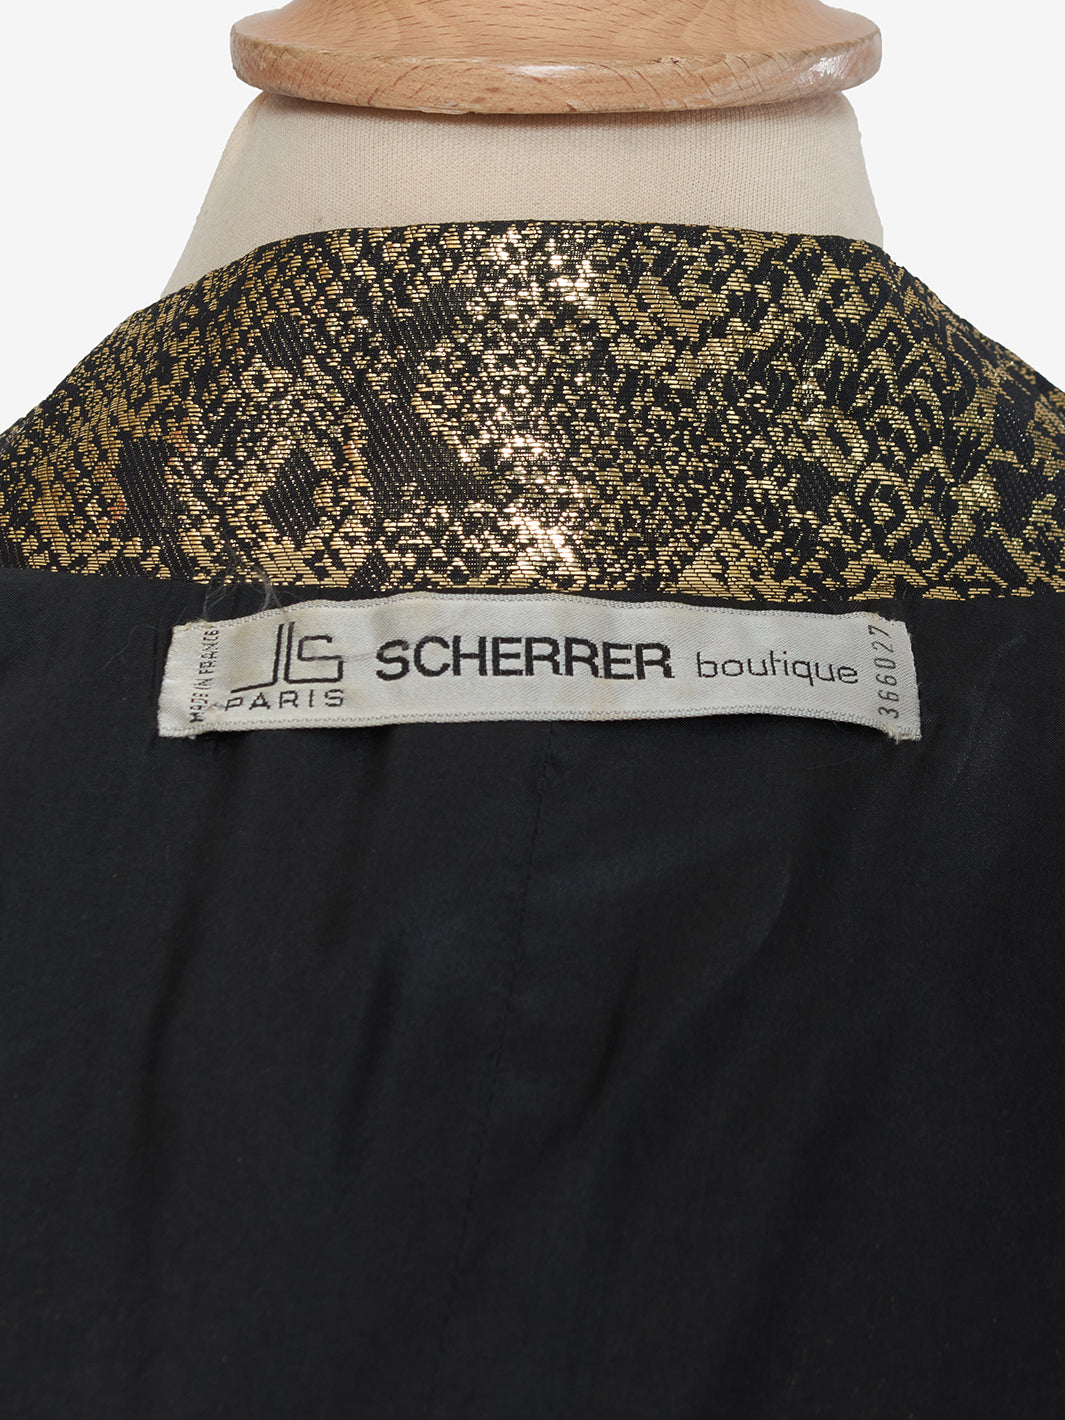 Scherrer Gold Print Dress